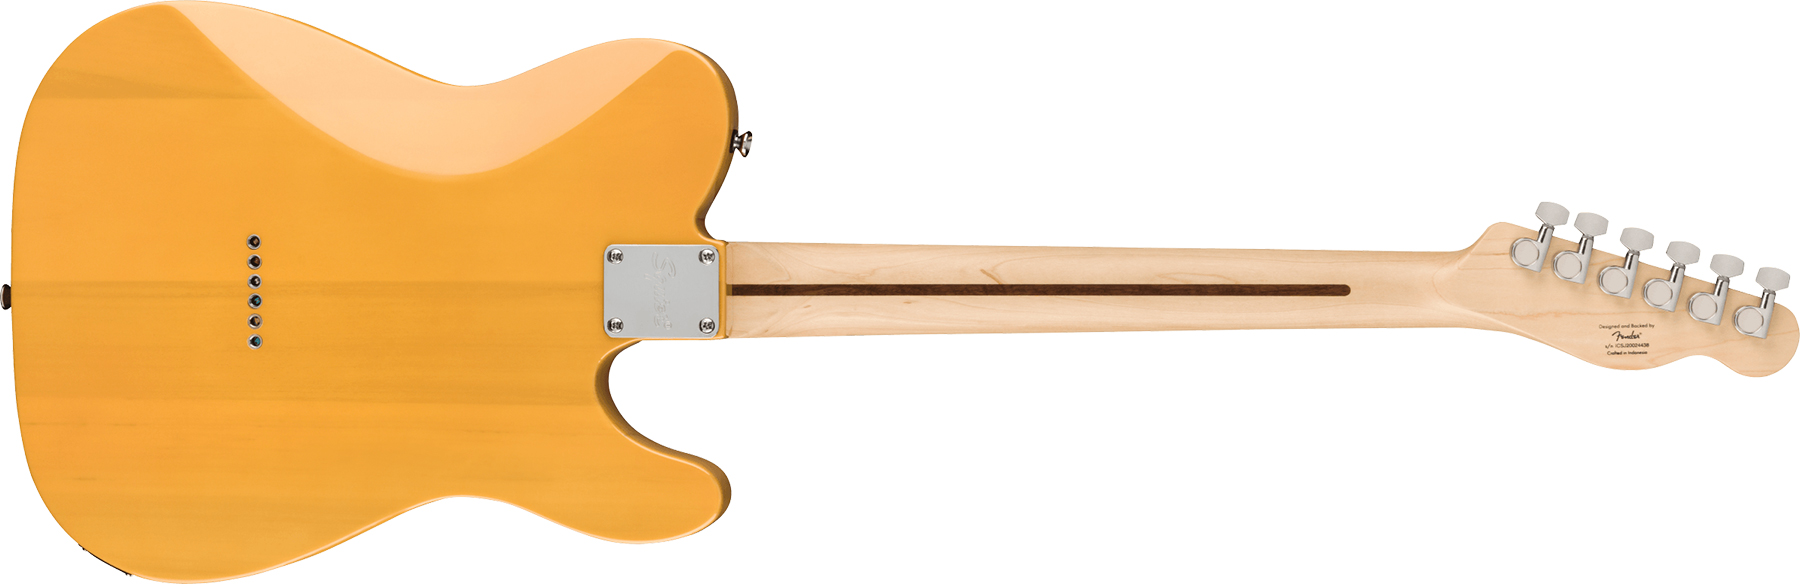 Squier Tele Affinity Gaucher 2021 2s Mn - Butterscotch Blonde - Guitarra electrica para zurdos - Variation 1